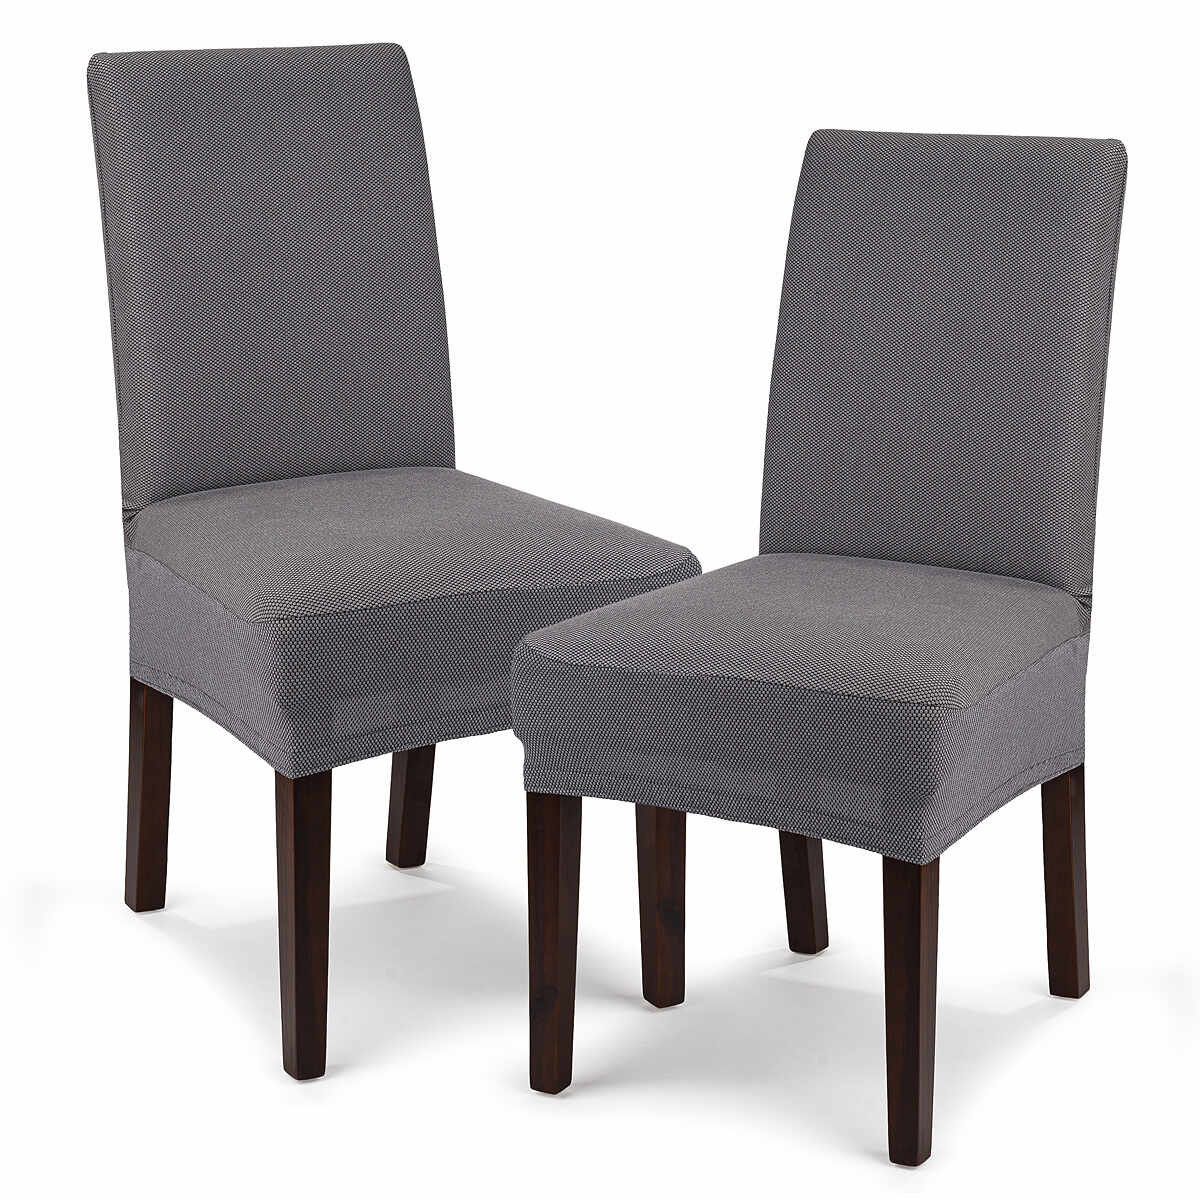 Husă multielastică 4Home Comfort pentru scaun, margri, 40 - 50 cm, set 2 buc.